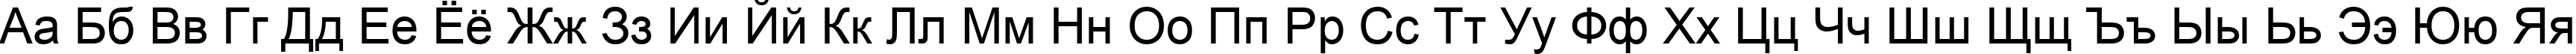 Пример написания русского алфавита шрифтом Arial